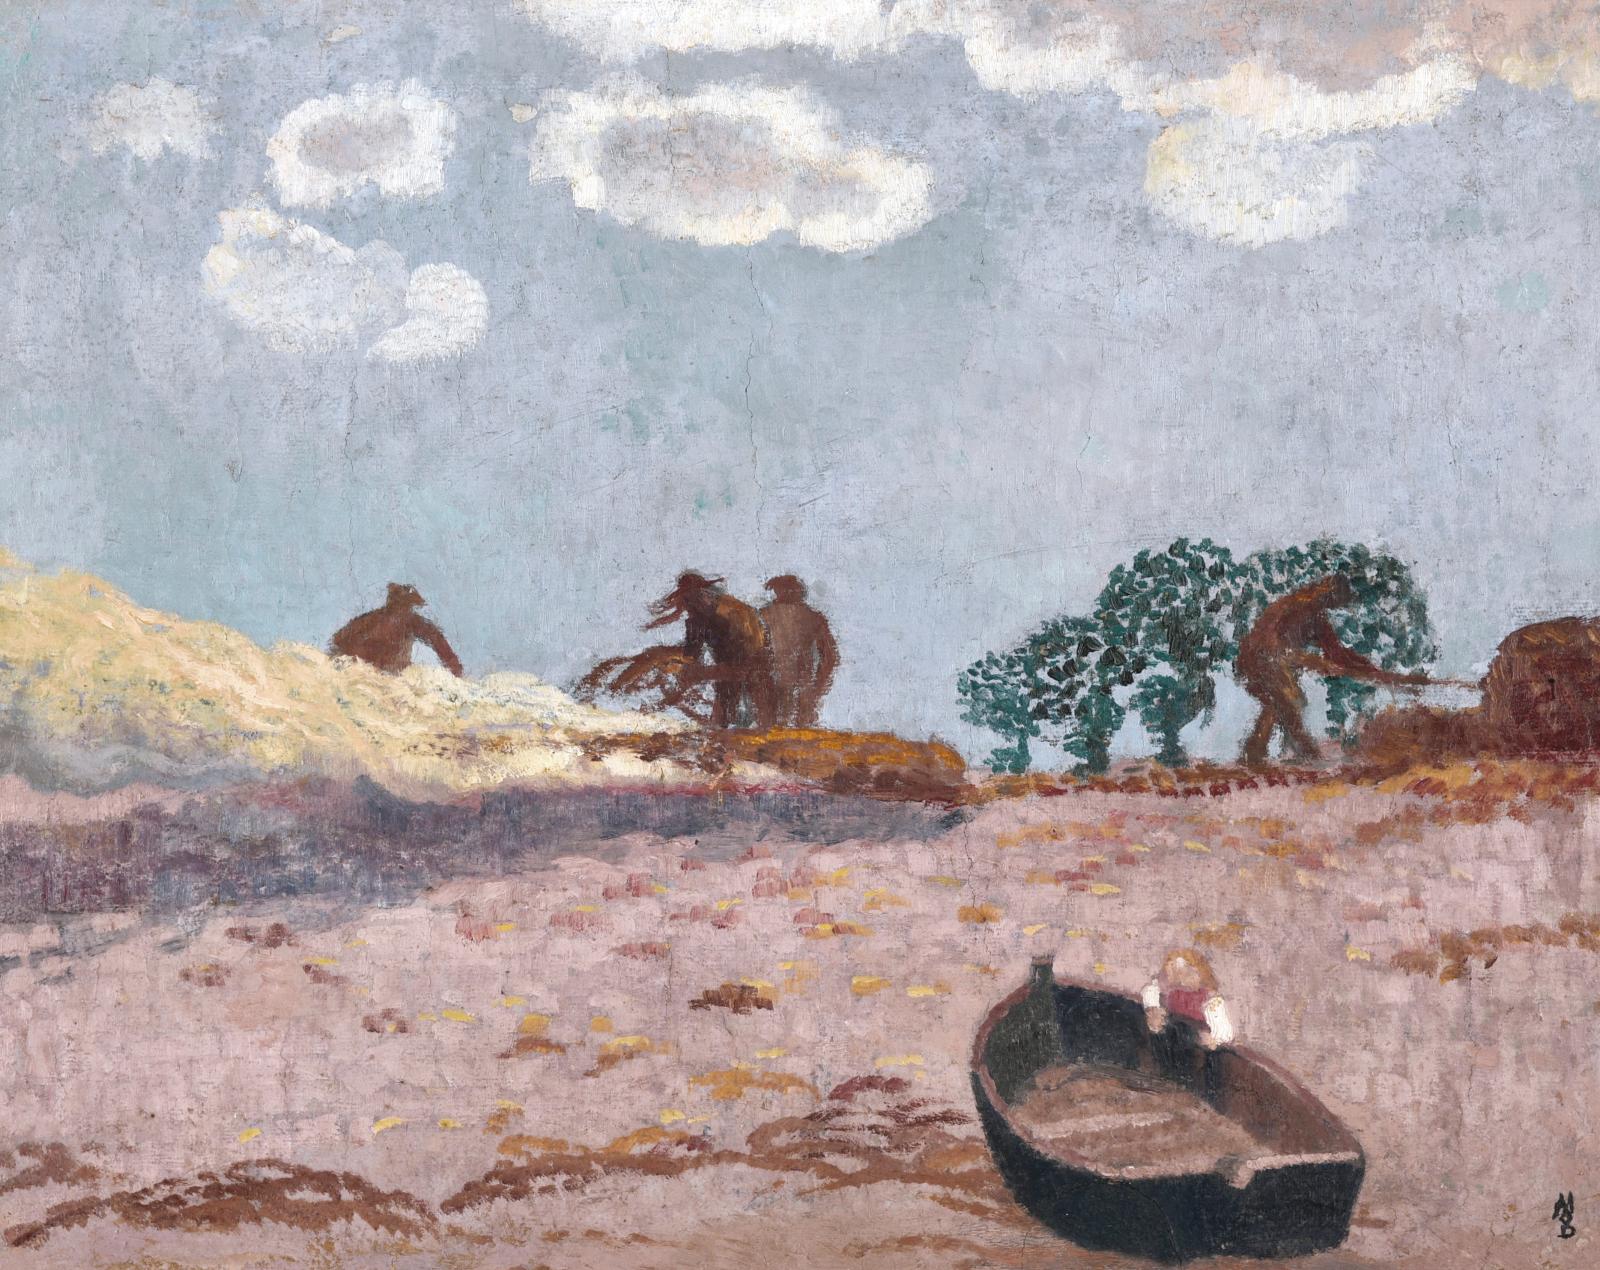 Les Brûleurs de goémon (42,5 x 55 cm) par Maurice Denis (1870-1943) est un parfait exemple de sa peinture de jeunesse. Peint vers 1899 lor